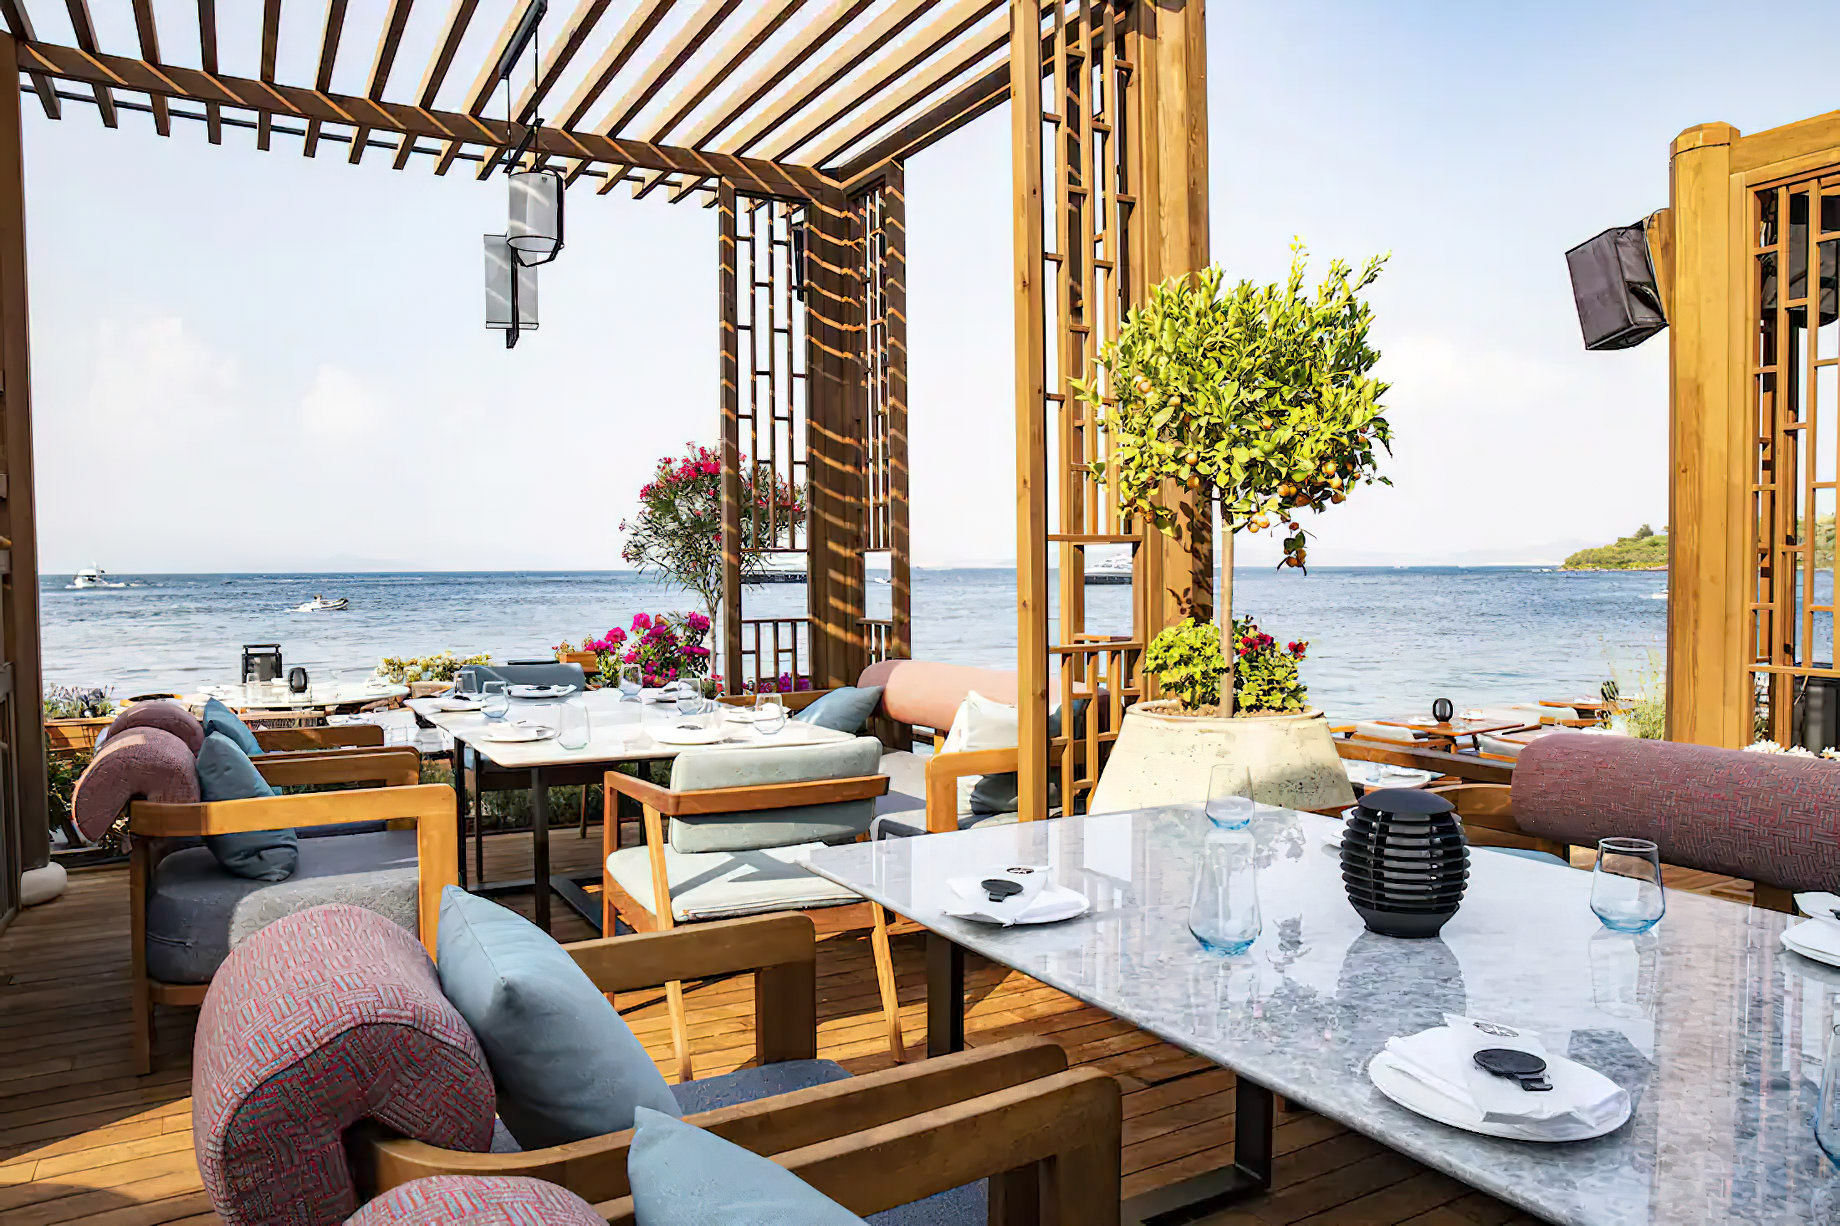 Mandarin Oriental, Bodrum Hotel – Bodrum, Turkey – Hakkasan Restaurant Dining